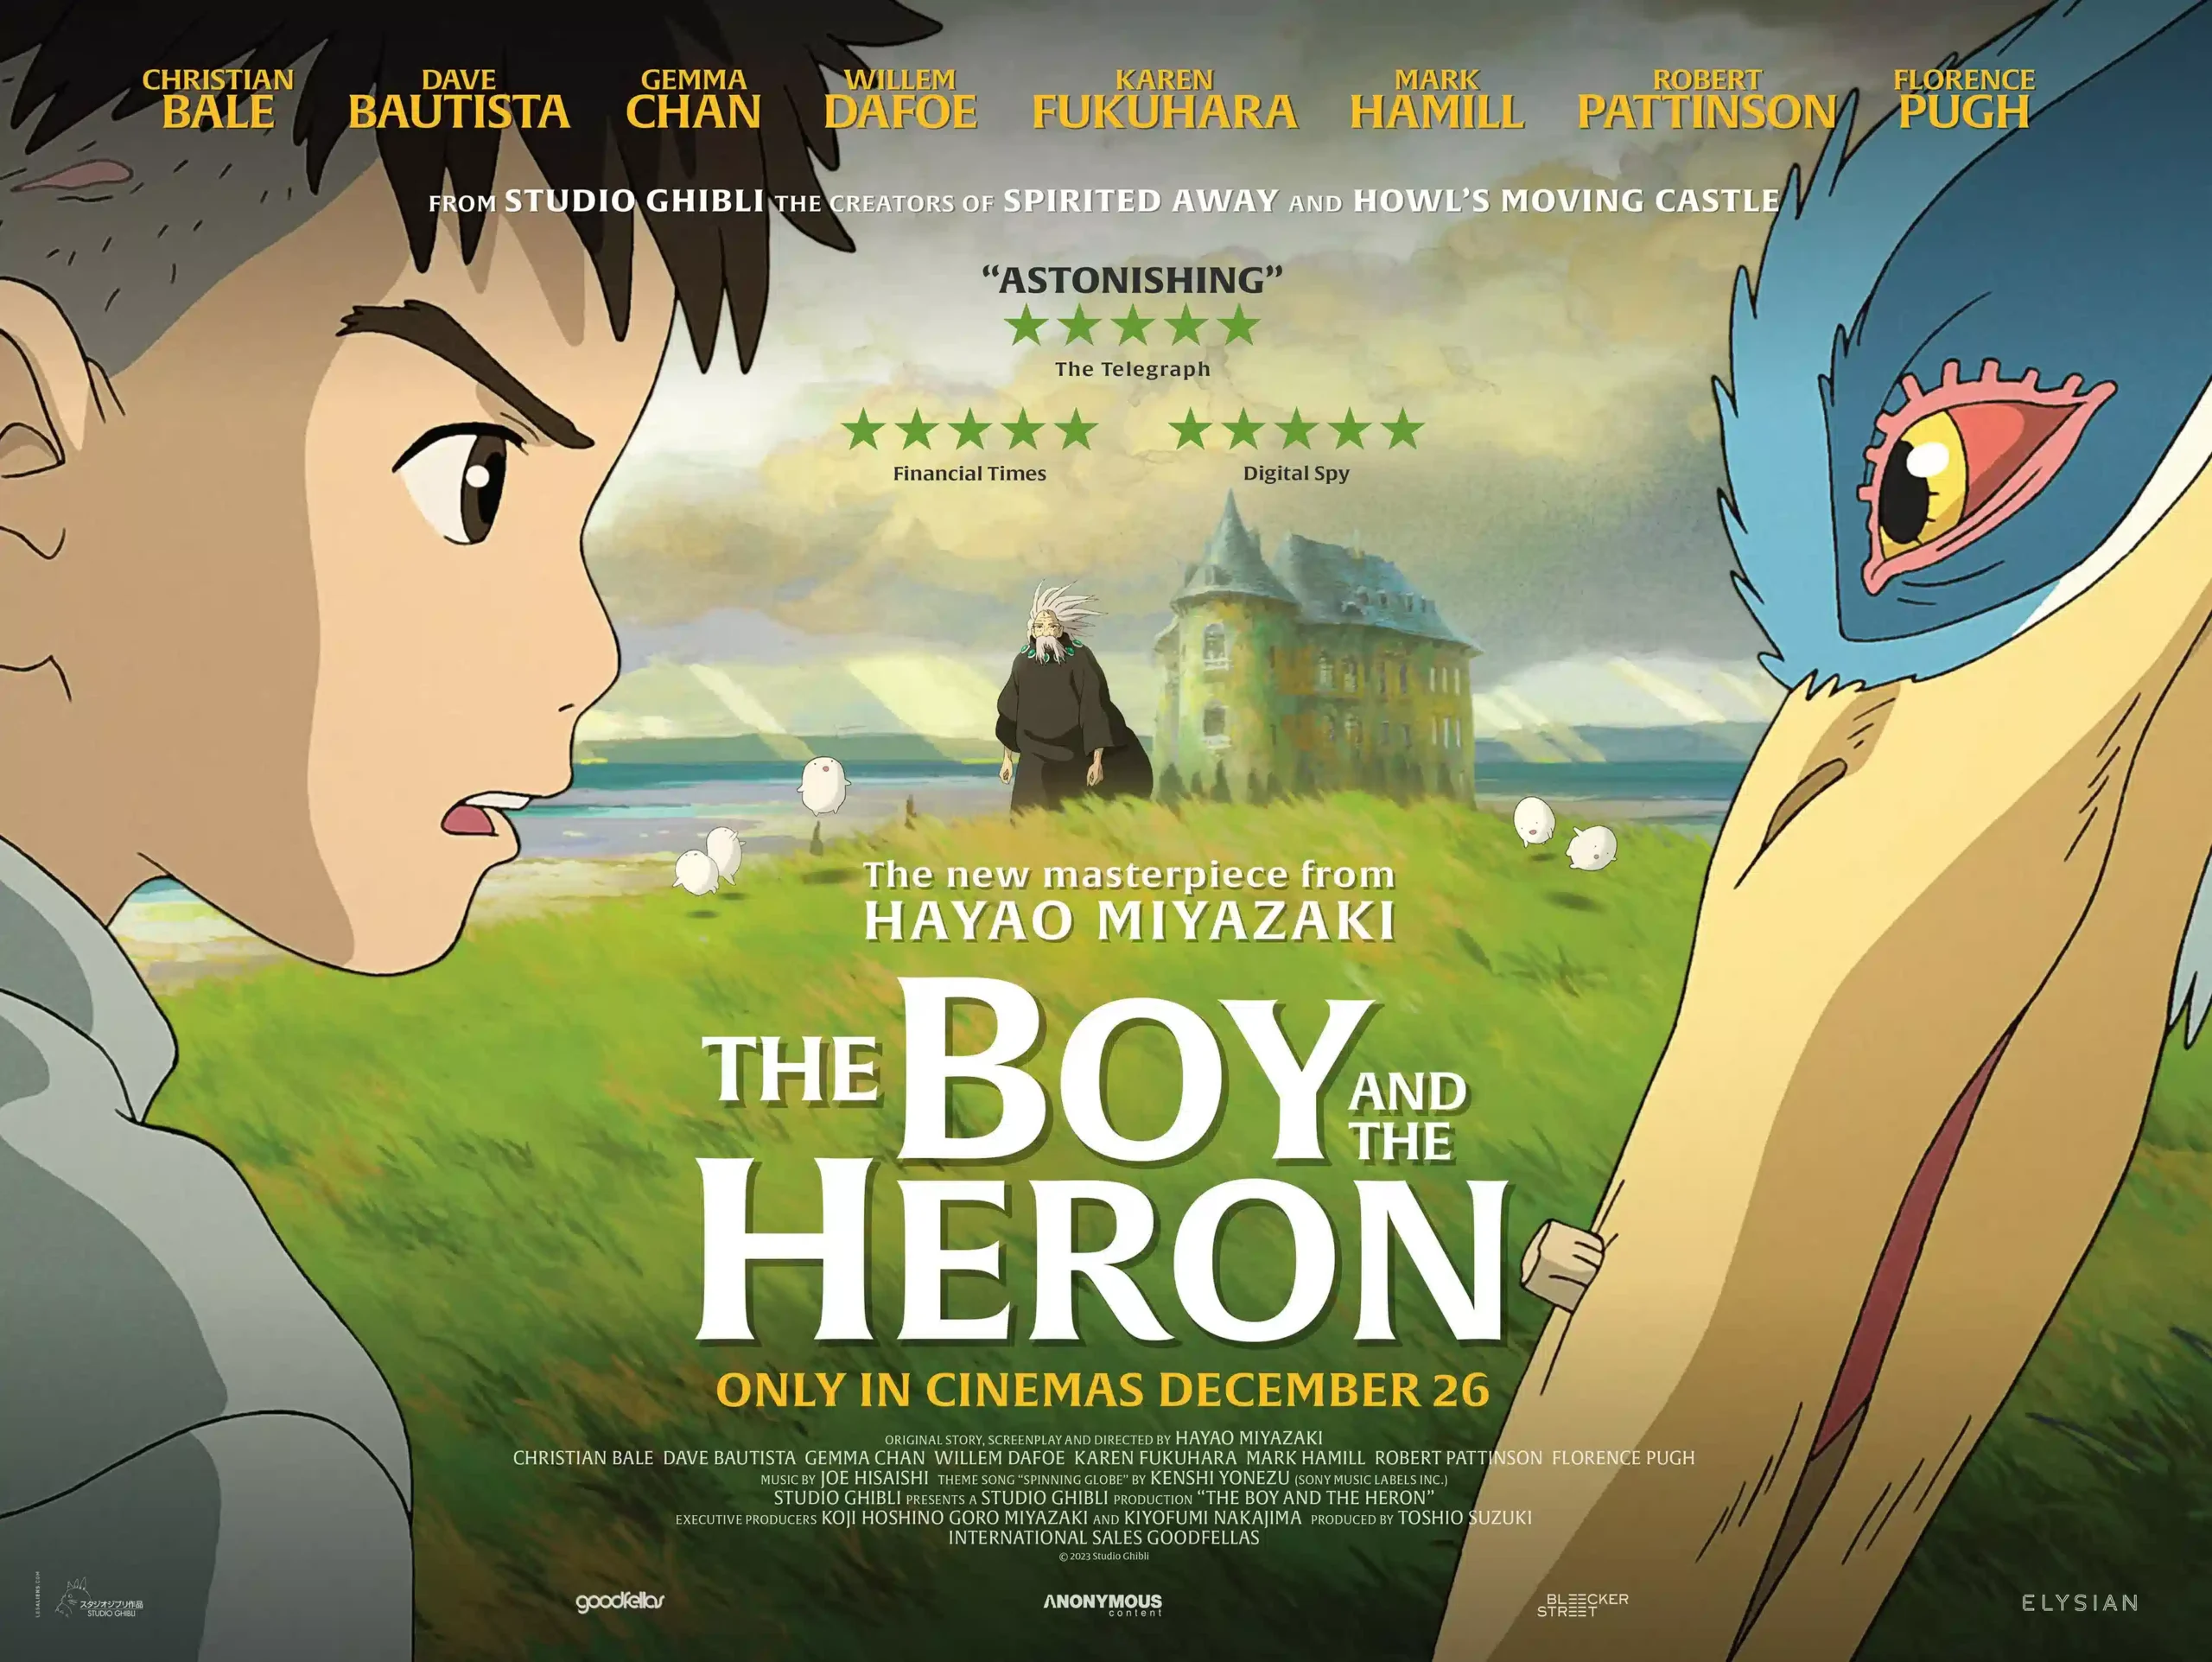 Film The Boy and the Heron, yang Mau Giblhi Date Simak Sinopsis dan Jadwal Tayangnya!